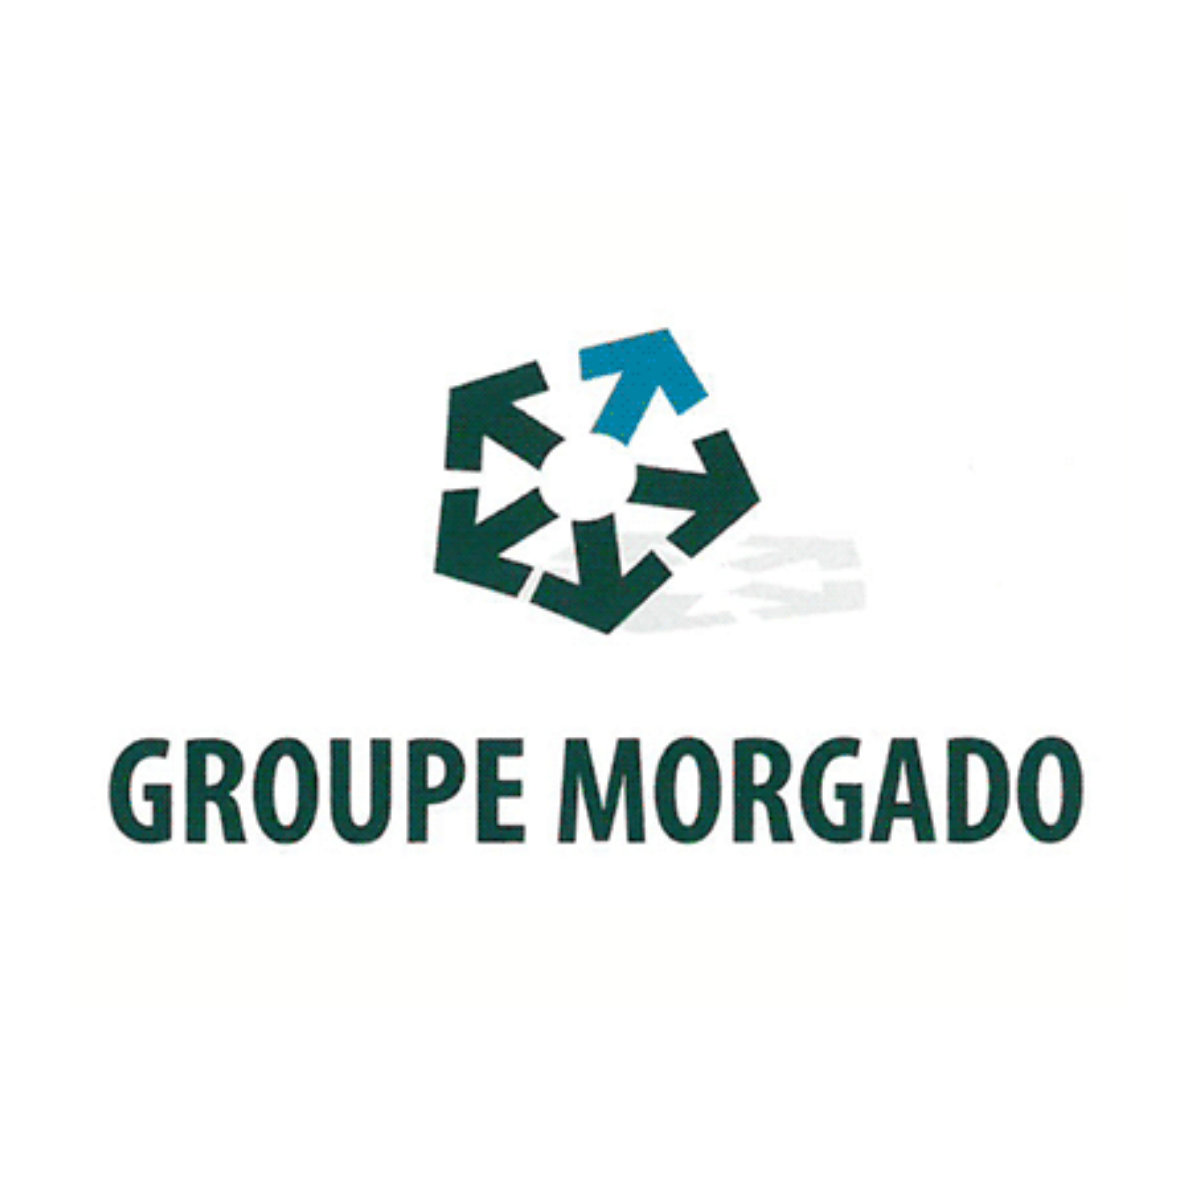 Groupe Morgado